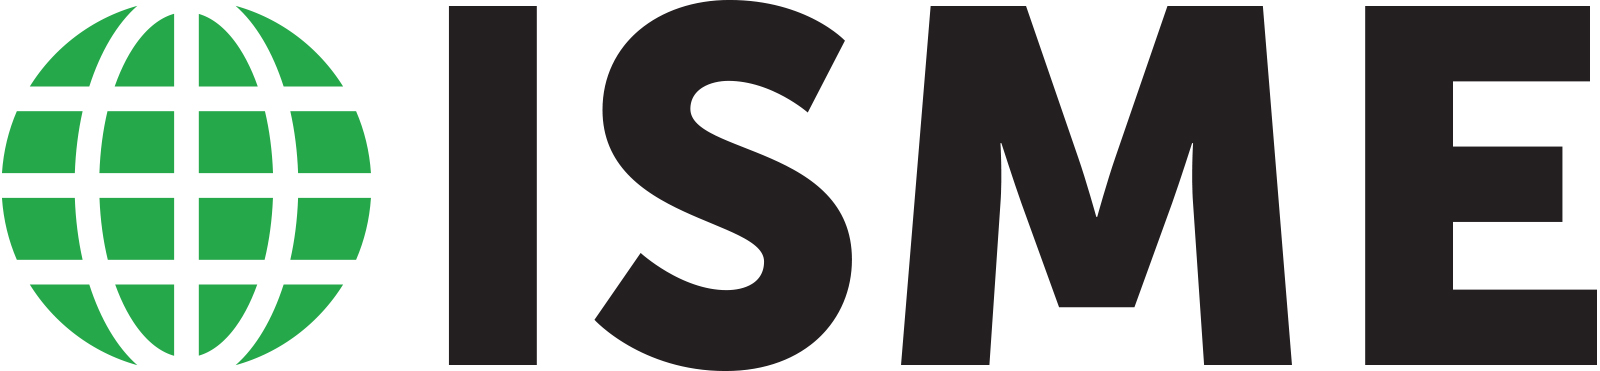 ISME Logo Online GreenBlack